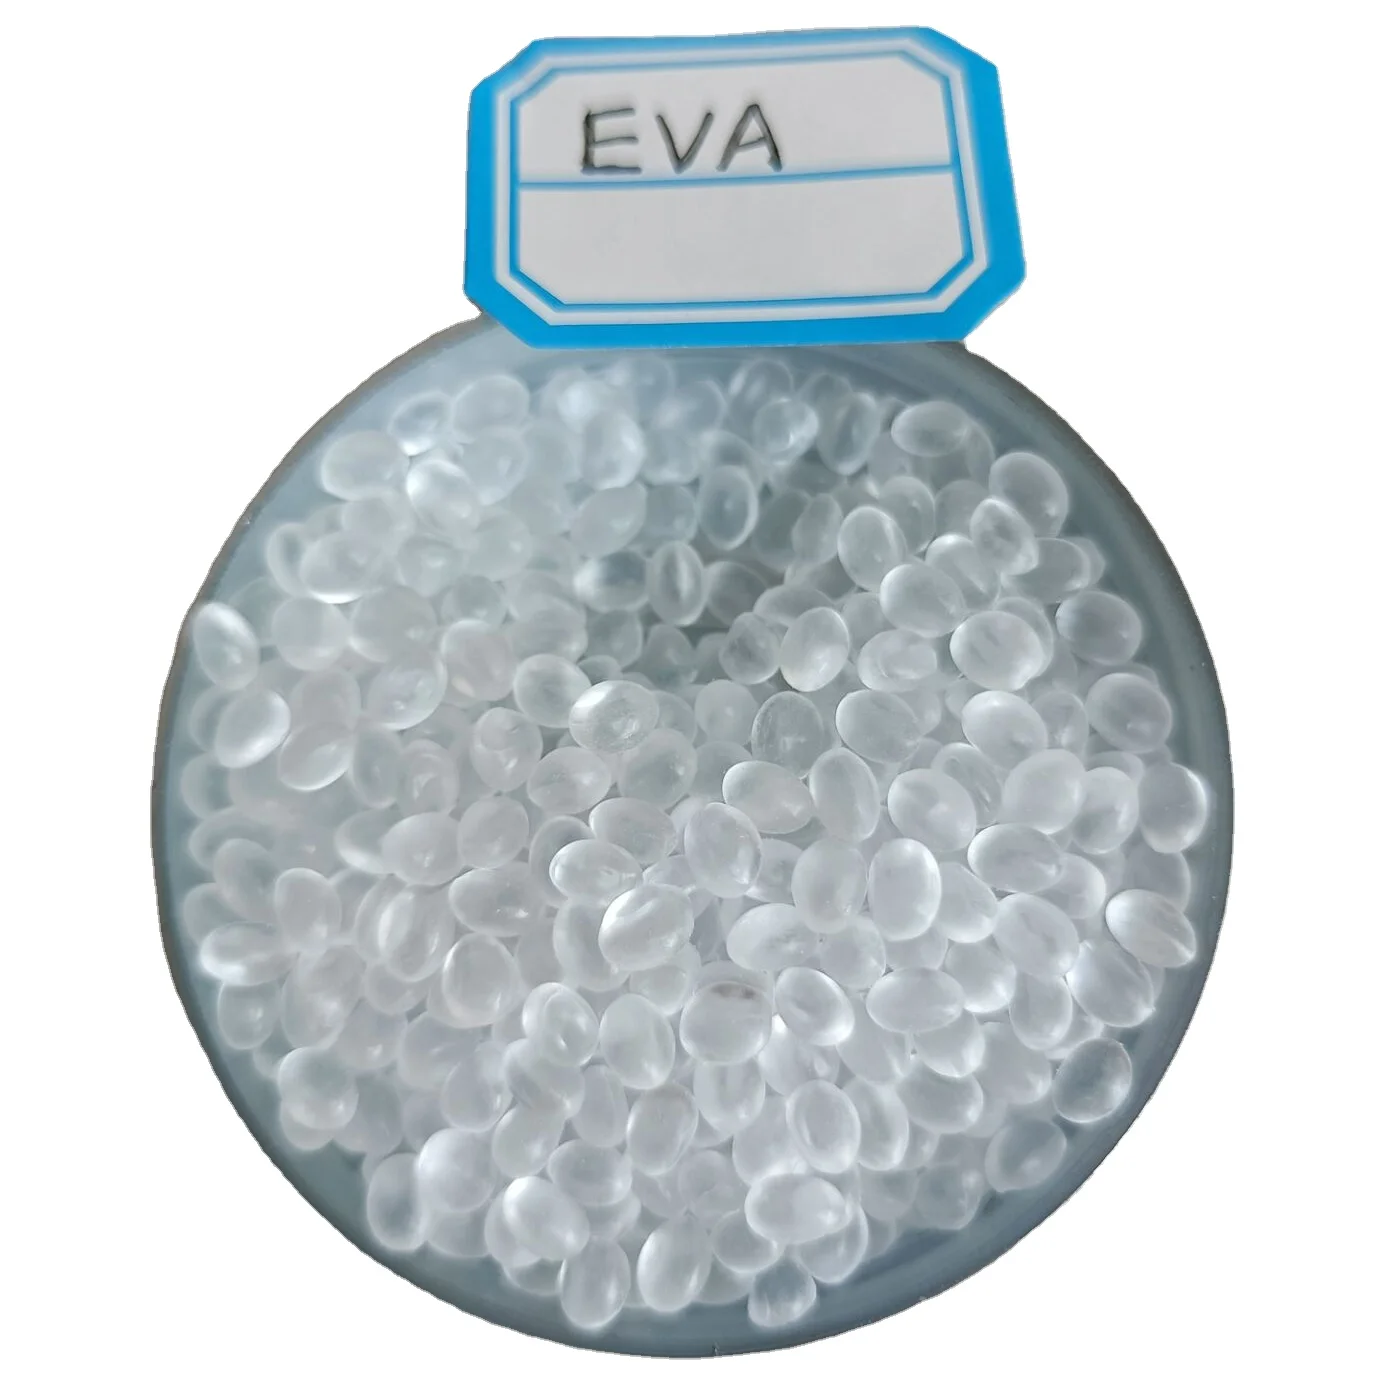 Virgin recycled Eva Ethylene vinyl Acetate Copolymer Resin EVA granules EVA pellets for hot melt (1600704340440)